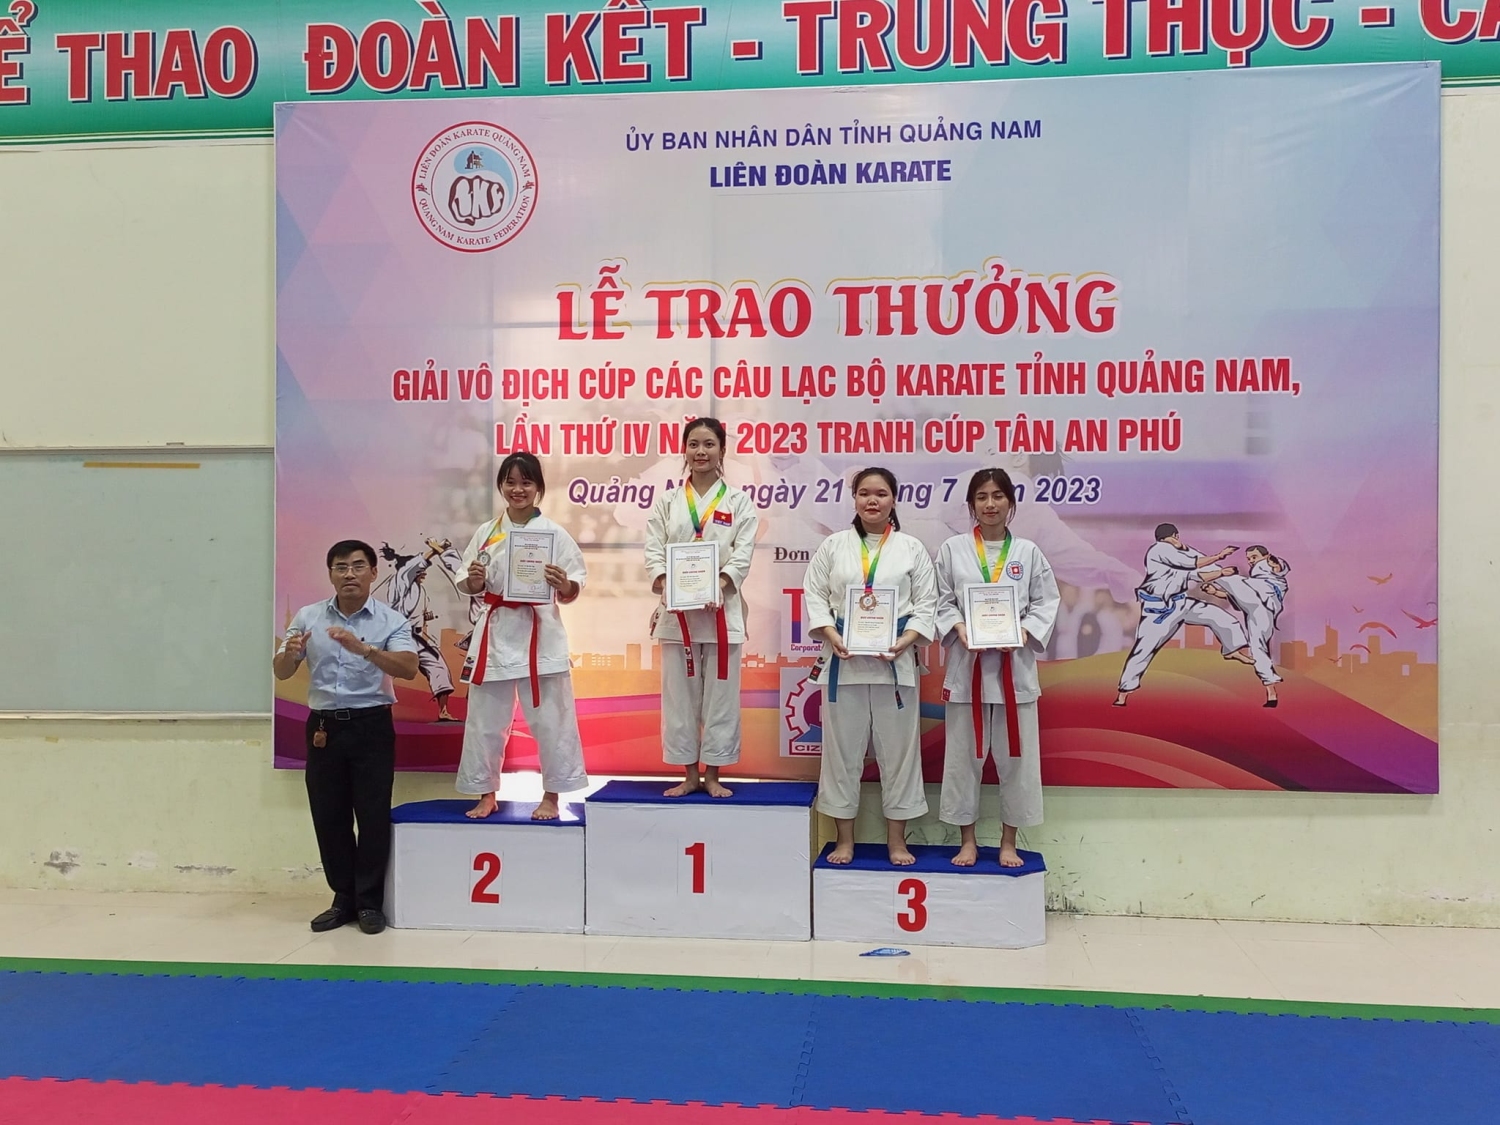 Cúp các câu lạc bộ Karate tỉnh Quảng Nam 2023 tranh cúp Tân An Phú